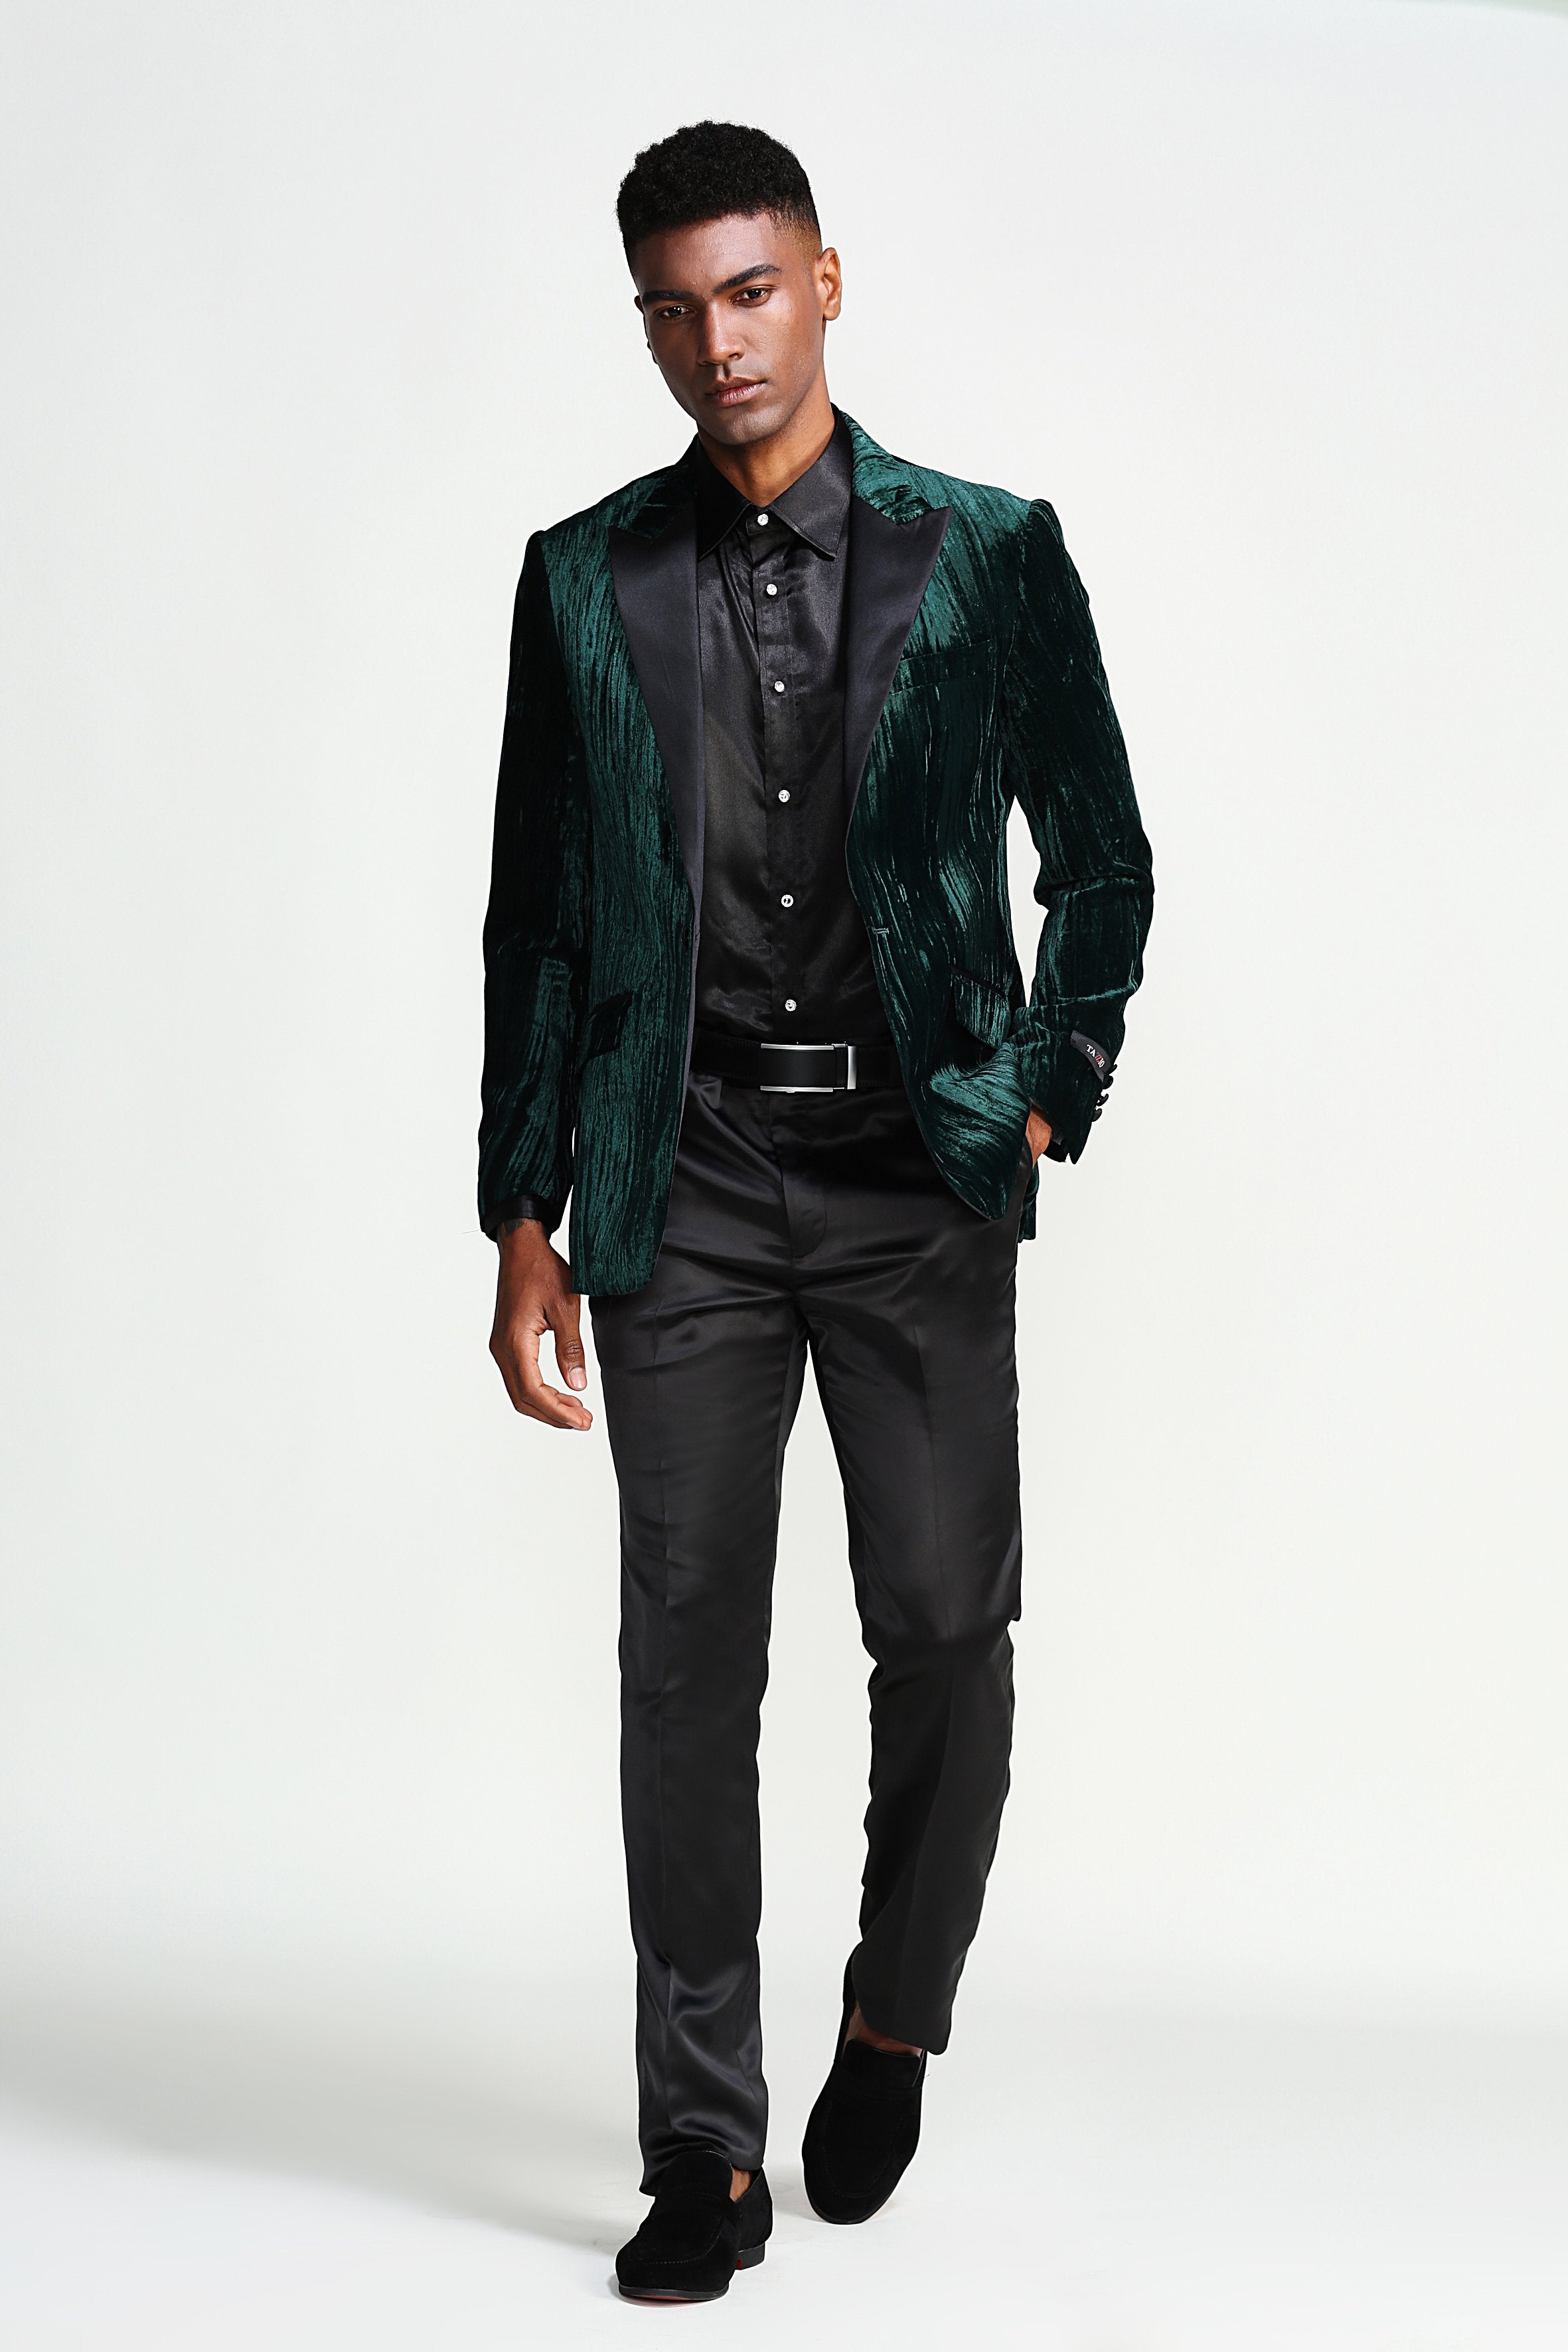 Slim Fit Textured Velvet HIgh Peak Lapel Sports coat Blazer Jacket For Men